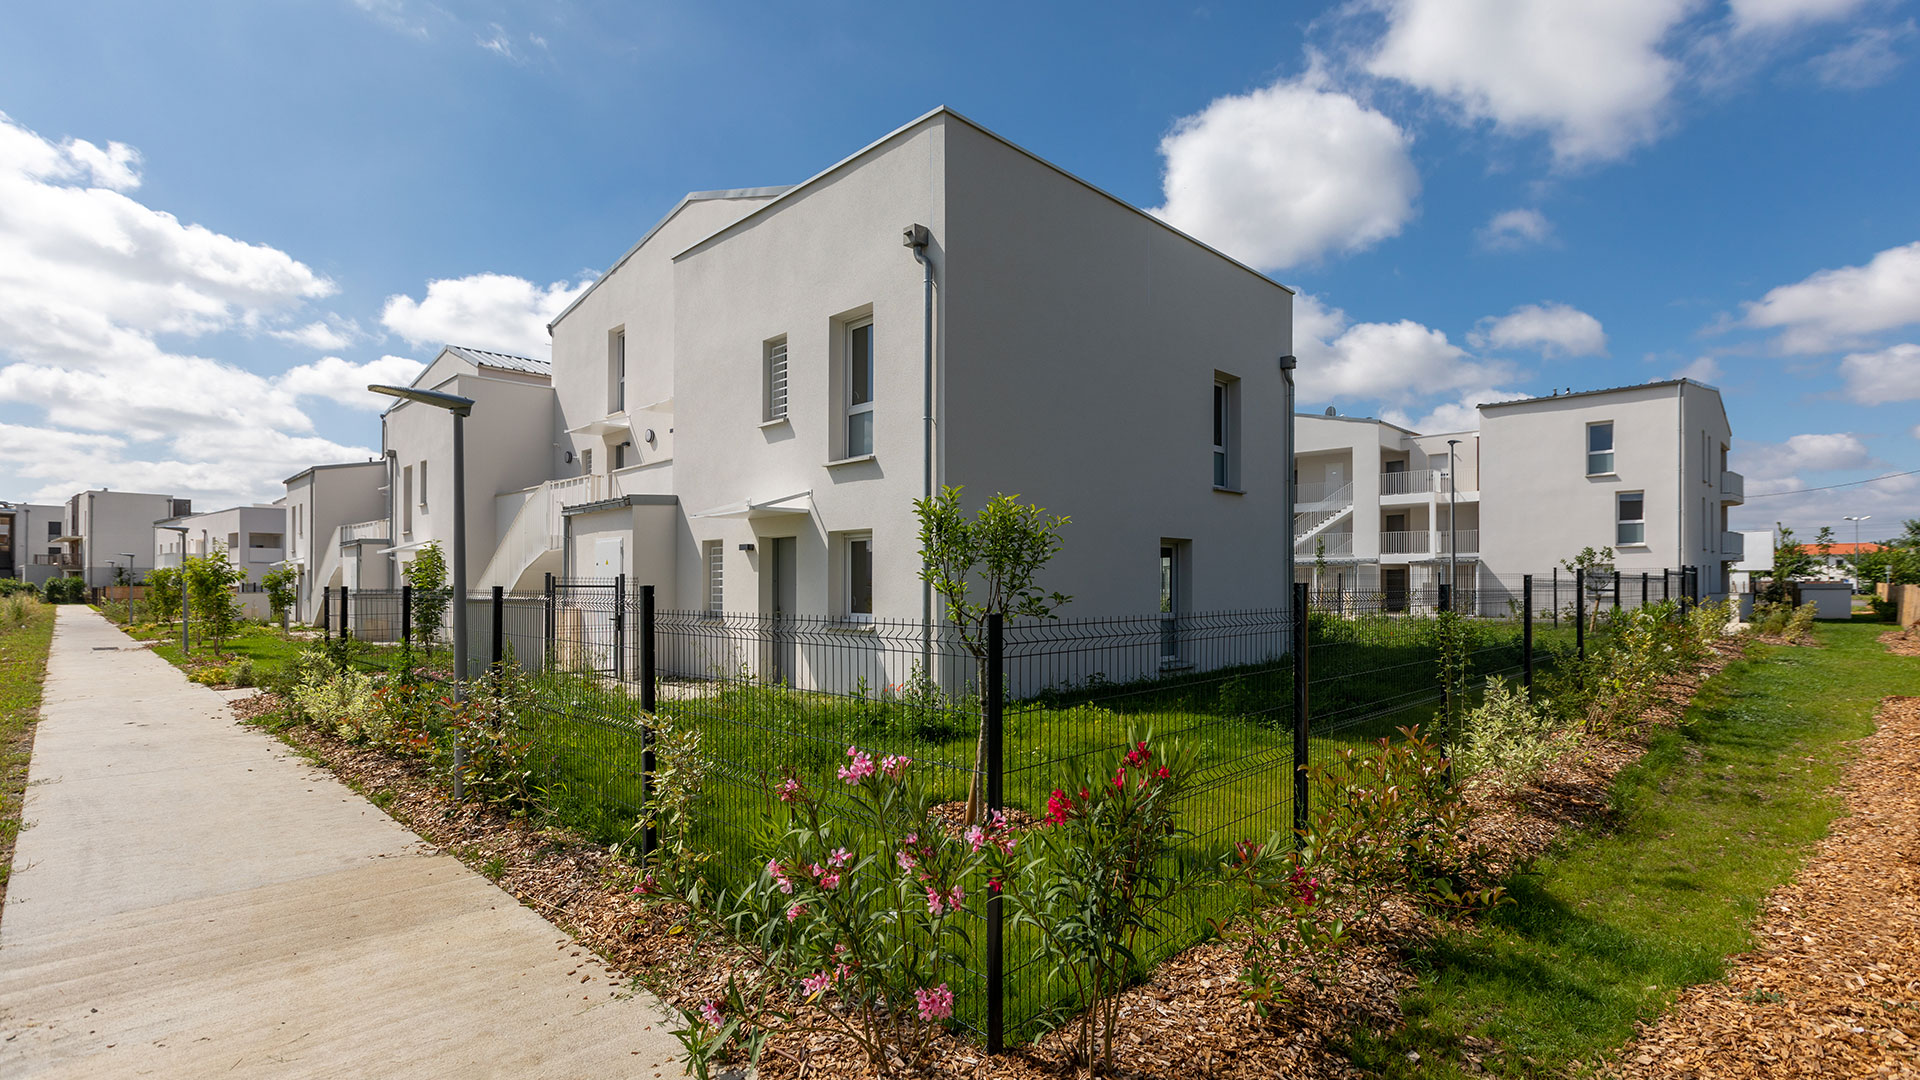 Ensemble immobilier situé à Villeneuve-Tolosane au cœur d’un quartier vert et urbain.